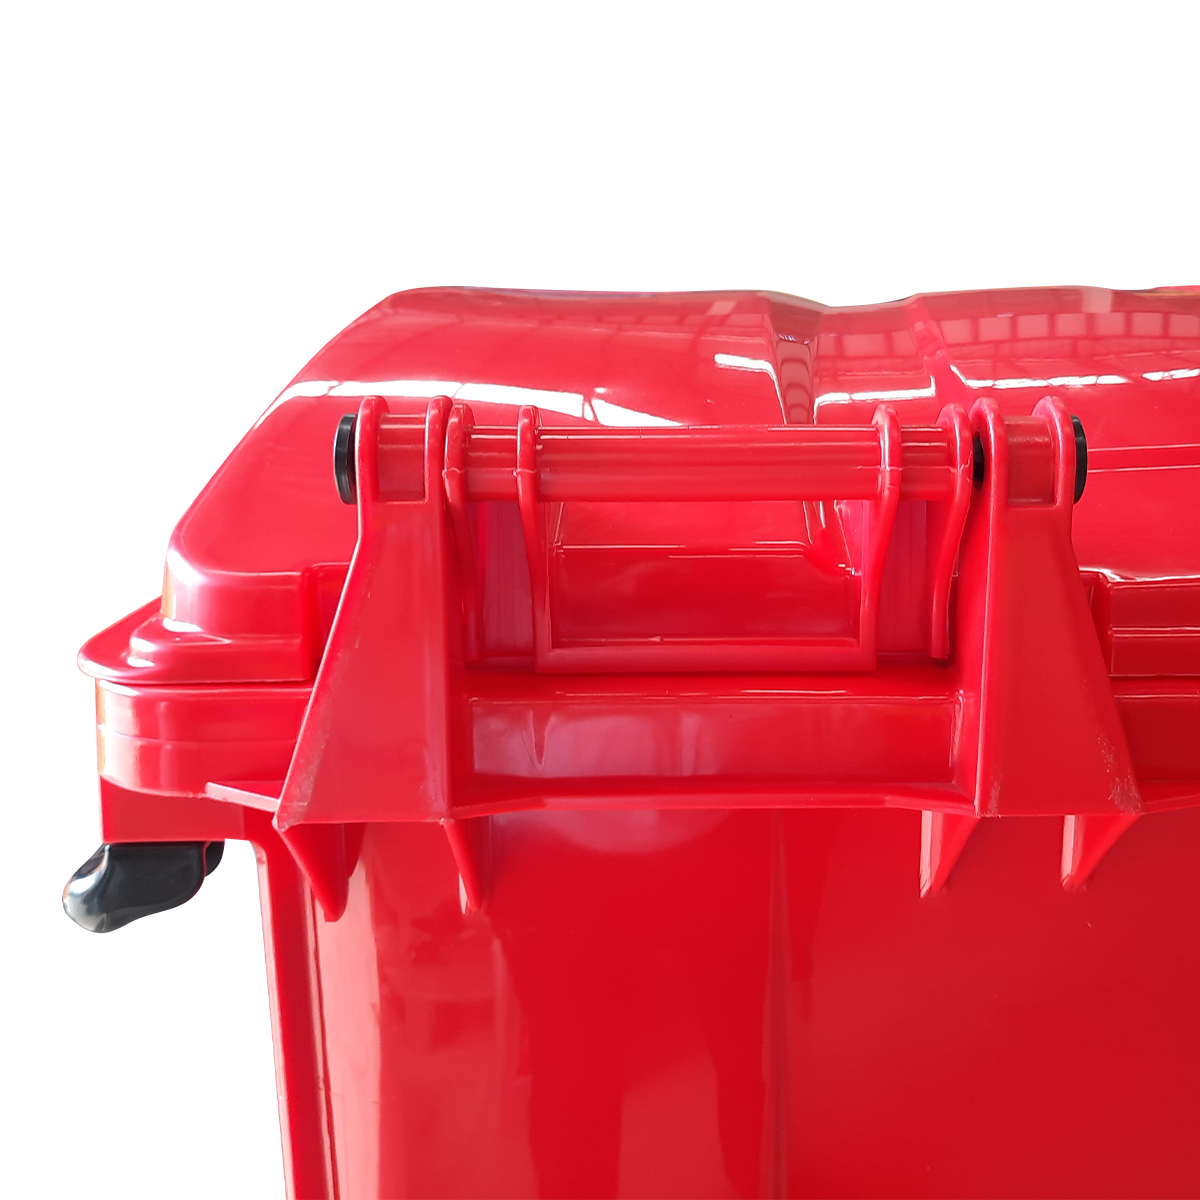 ถังขยะเทศบาลขนาดใหญ่ 1100 ลิตร และมีหูเกี่ยว (Lazy Arm) สีแดง